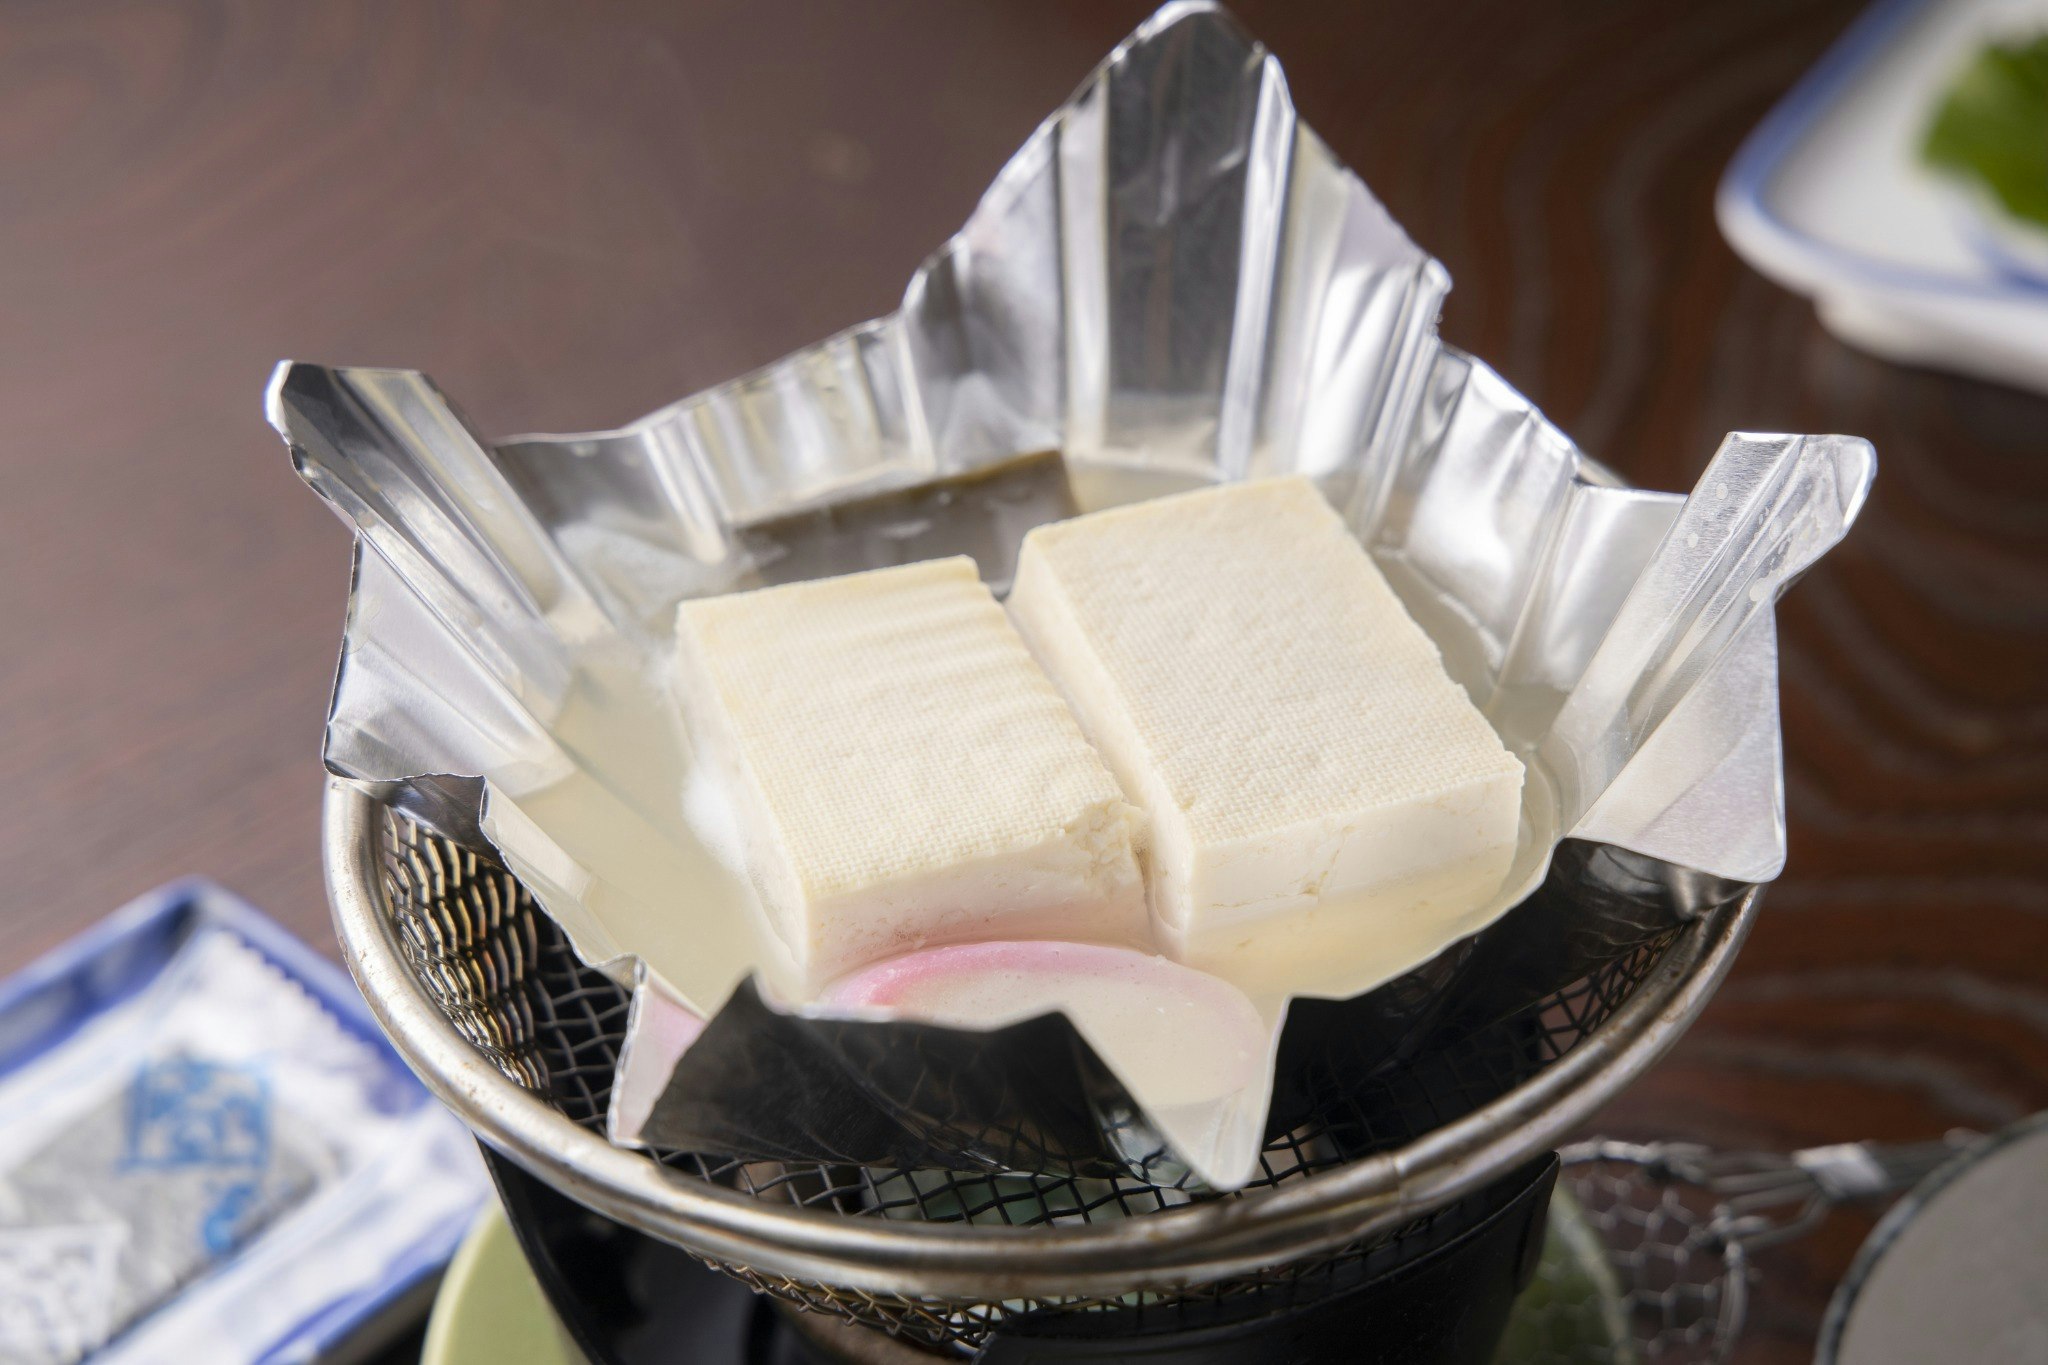 川魚の塩焼き、名水豆腐、自家製味噌小鍋付き季節の会席コース